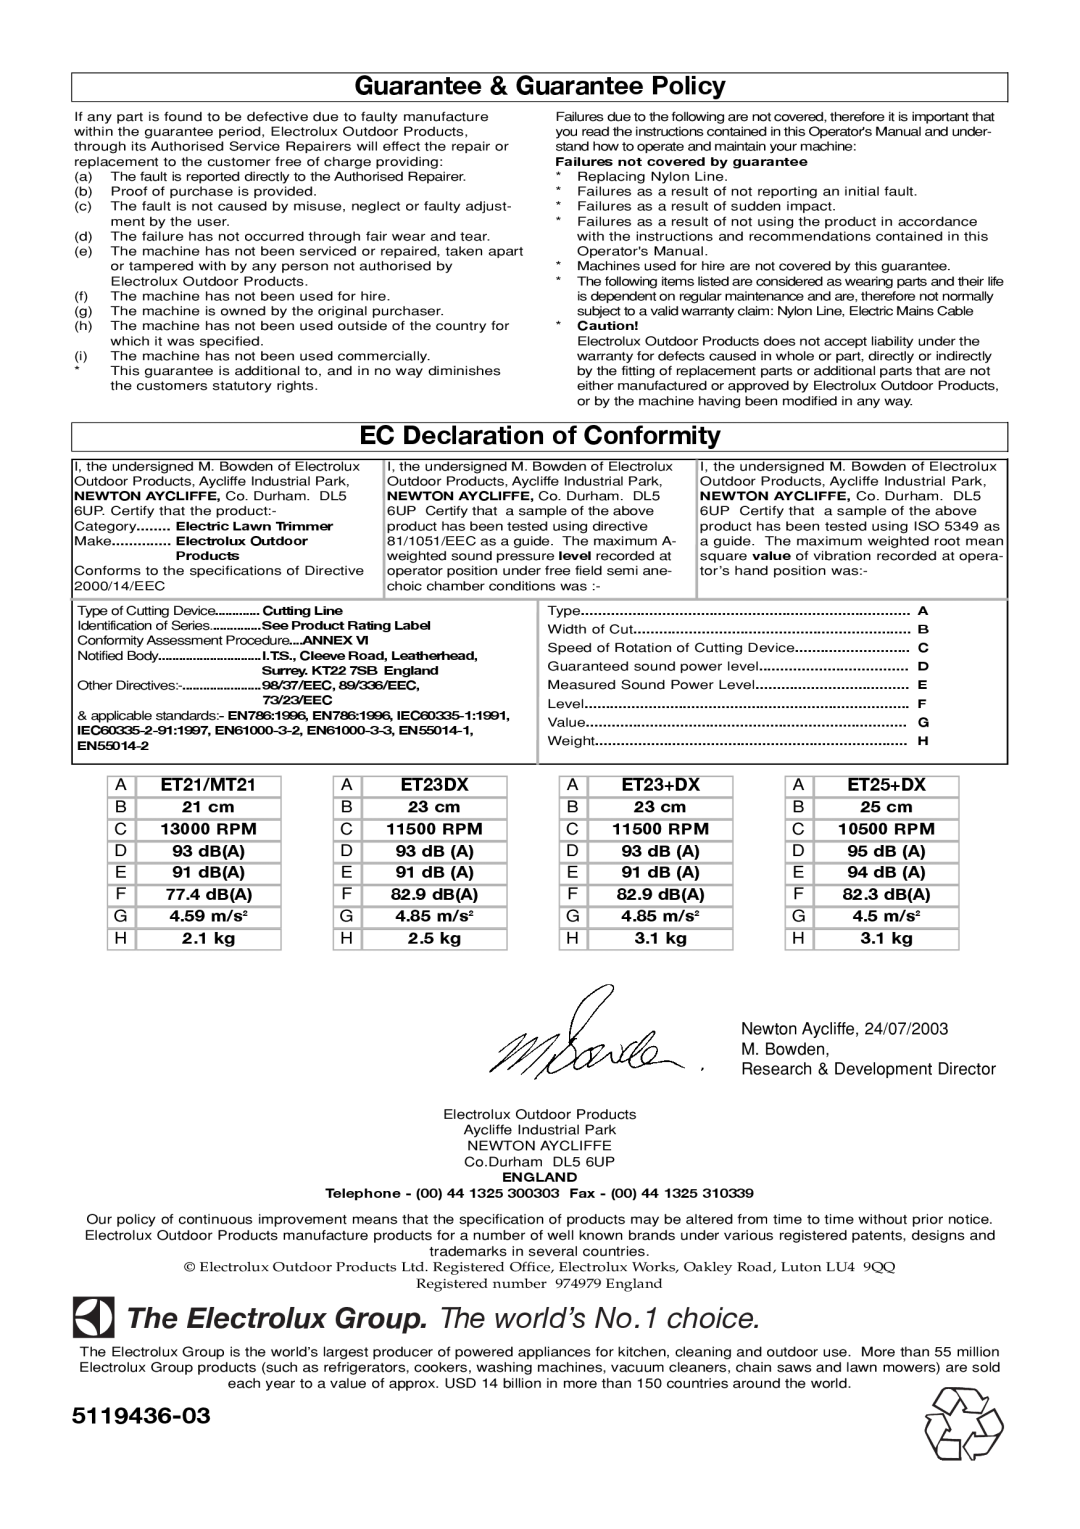 Electrolux Guarantee & Guarantee Policy, EC Declaration of Conformity, A ET21/MT21, A ET23DX, A ET23+DX, A ET25+DX 